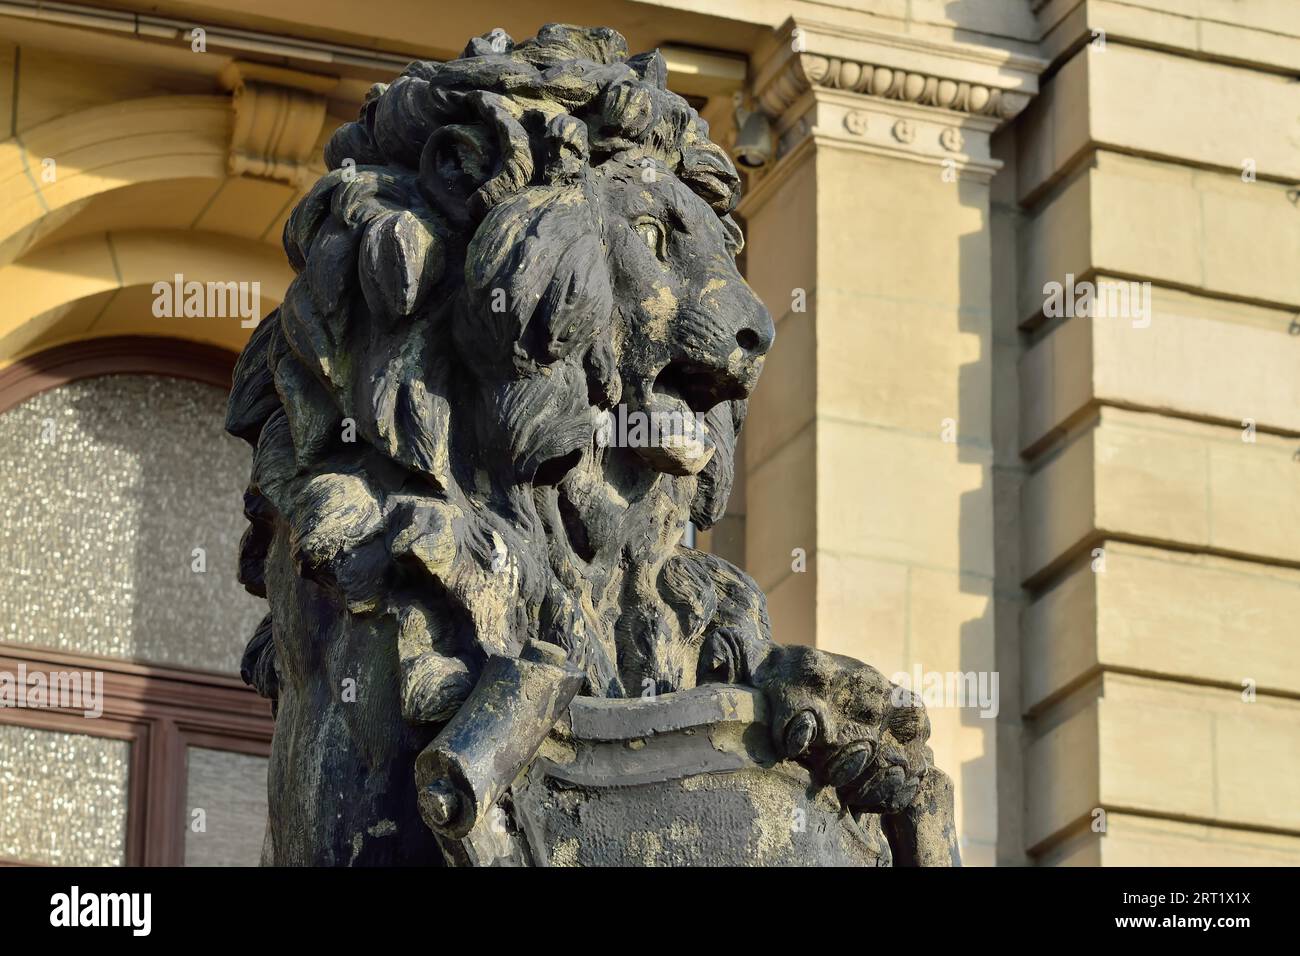 Kaliningrad, Russland, 30. september 2020: Skulptur eines Löwen auf der Veranda der Kenigsberger Börse. Kaliningrad, Königsberg vor 1946, Russland Stockfoto